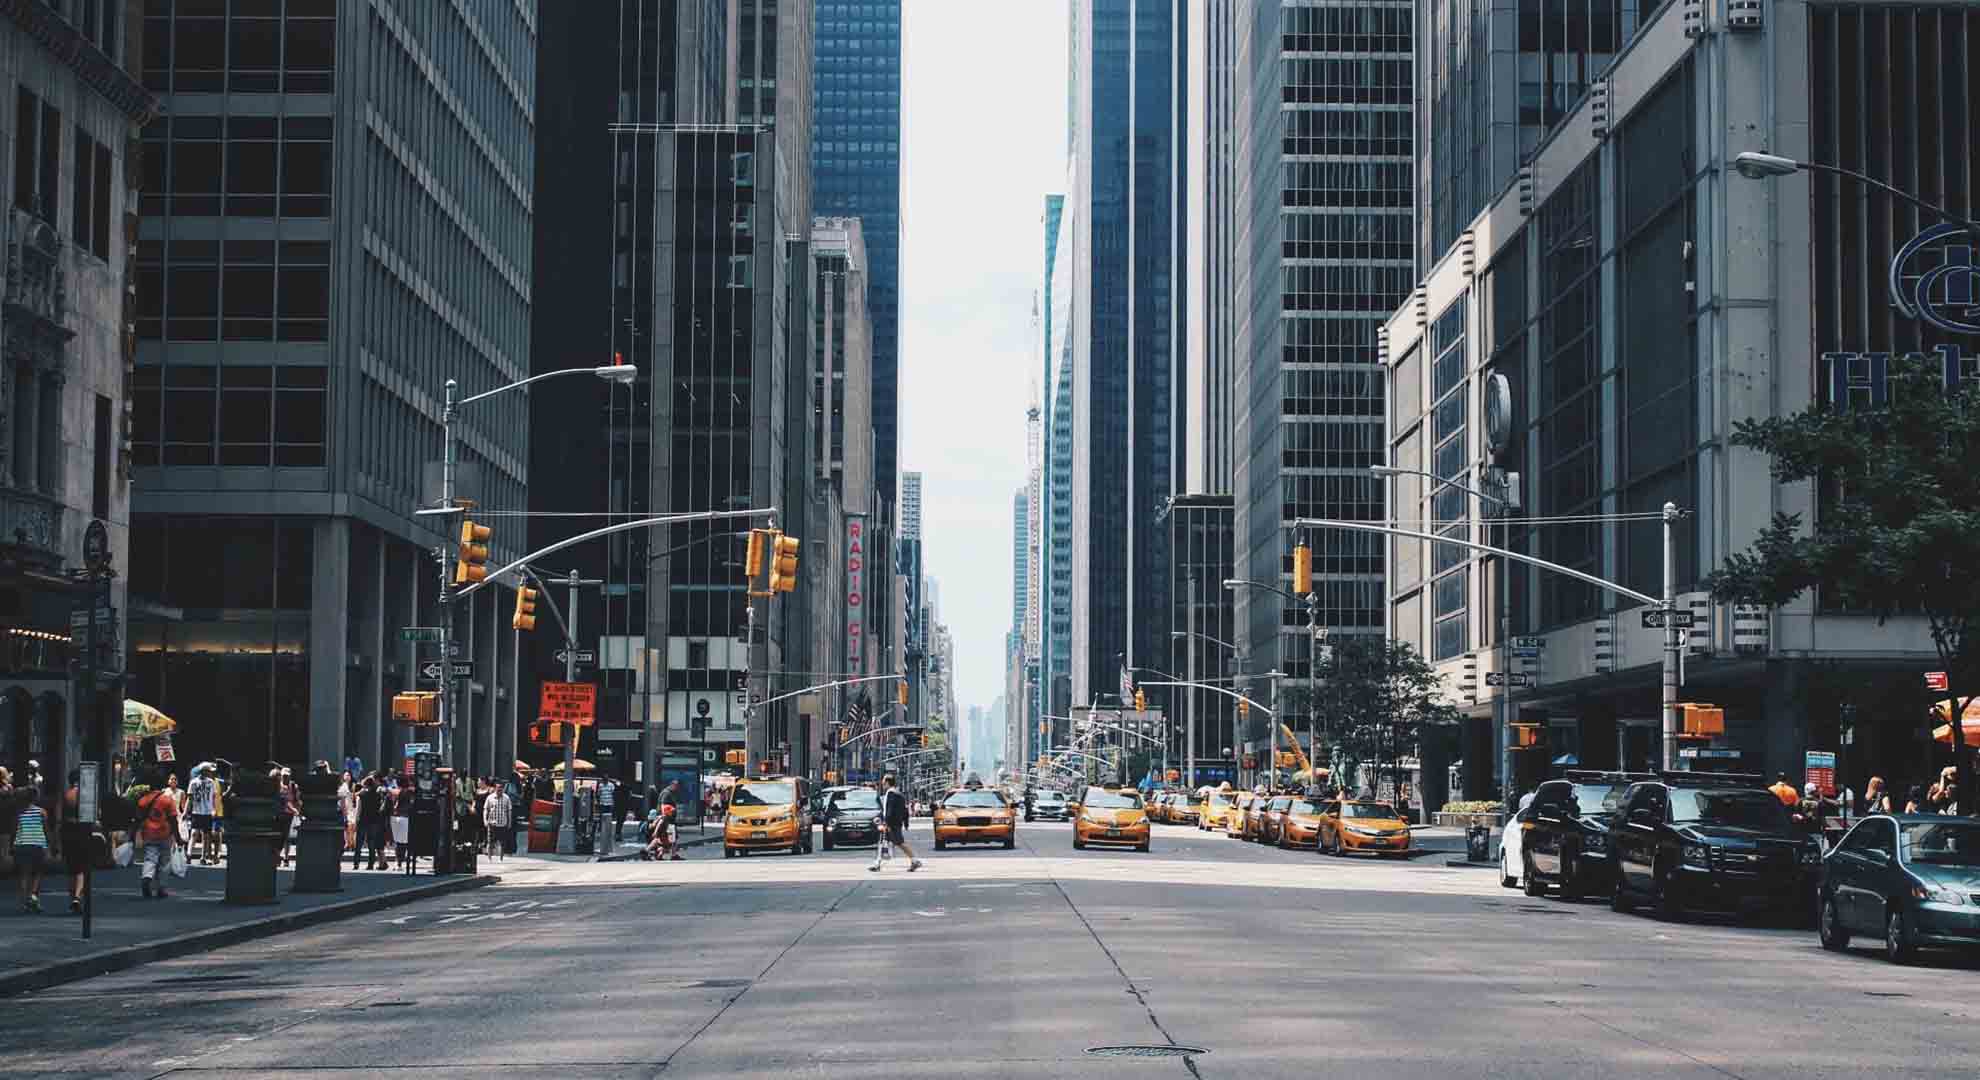 En la ciudad de Nueva York el tráfico tiene prioridad sobre los peatones. Imagen de Andrea Cau